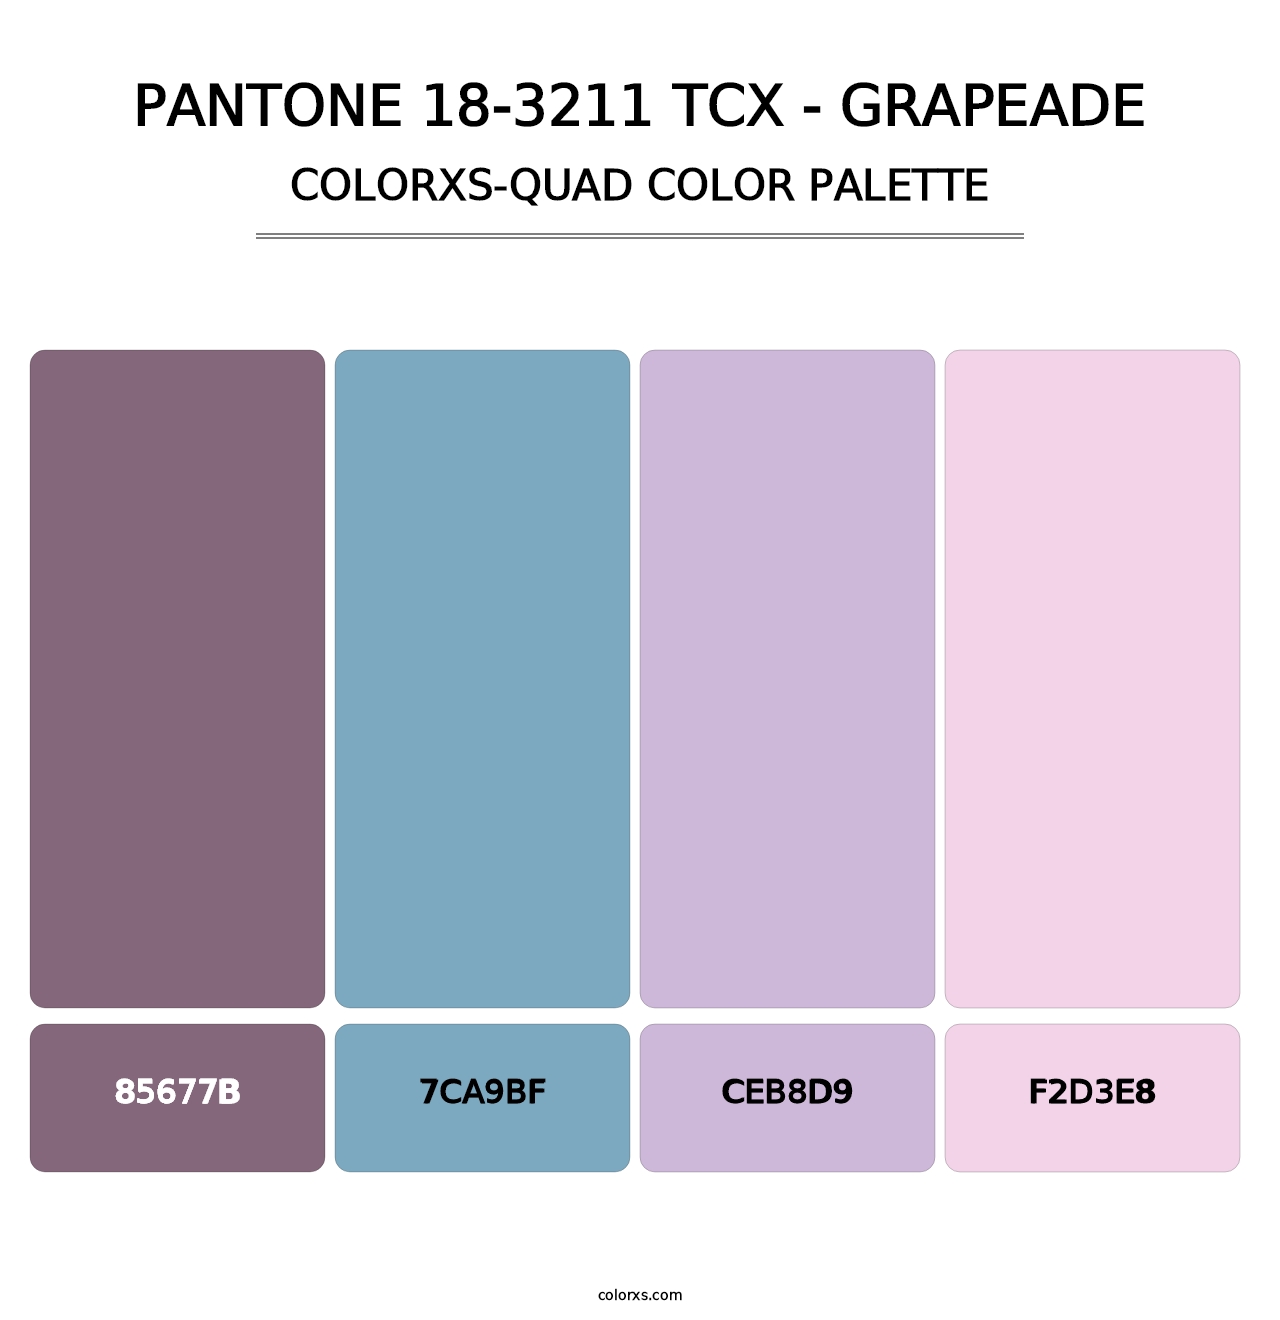 PANTONE 18-3211 TCX - Grapeade - Colorxs Quad Palette